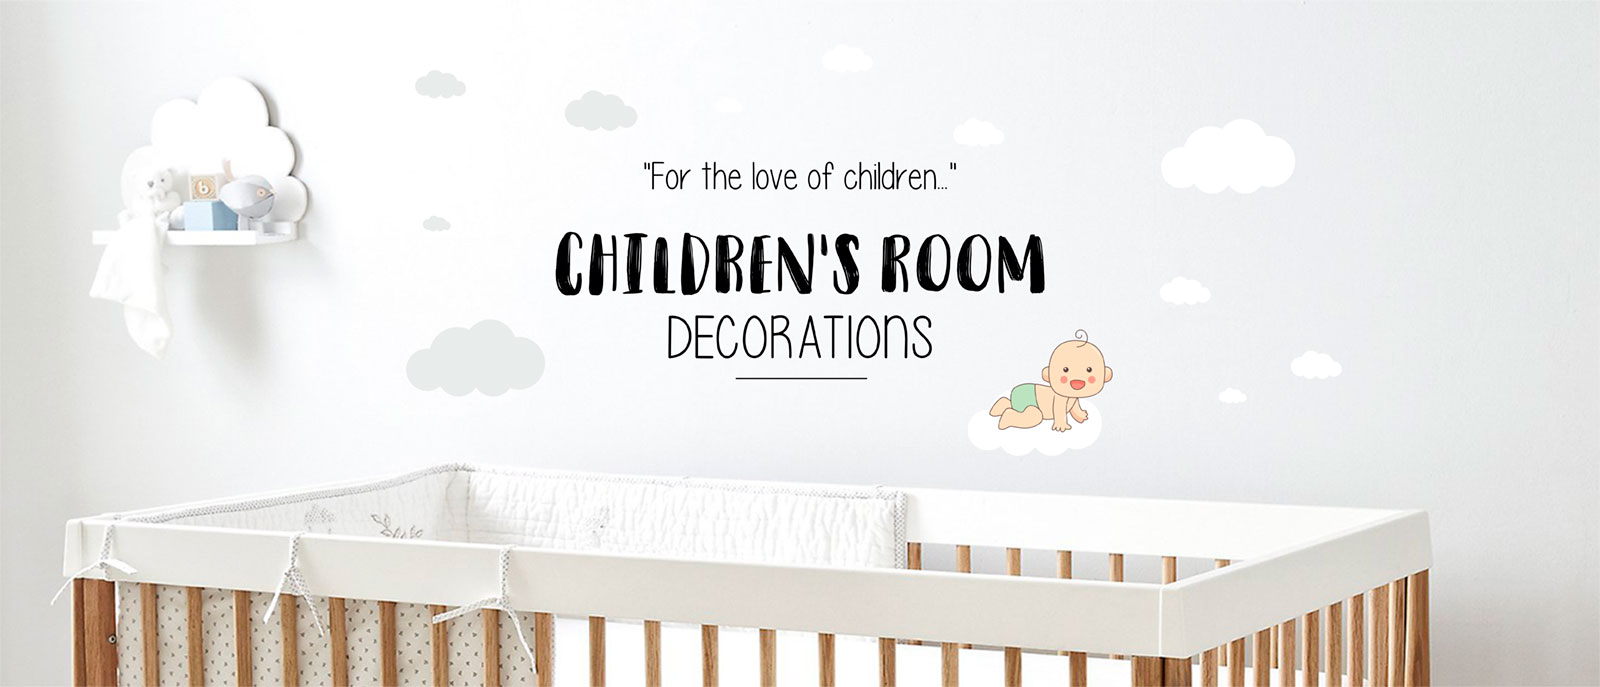 mykidsmurals-childrens-room-decorations-slide-1